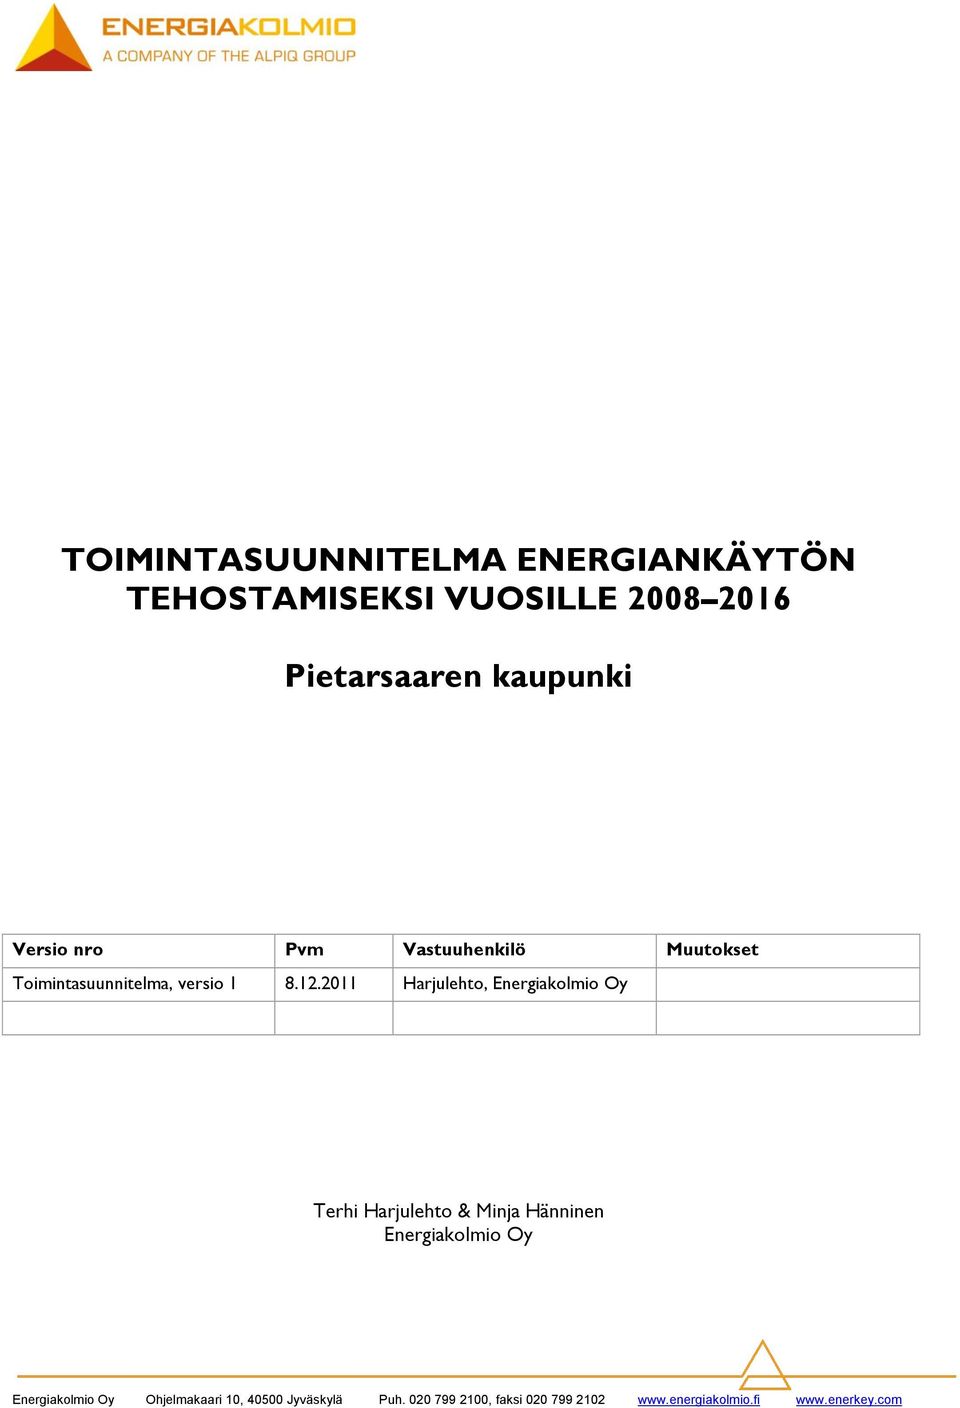 2011 Harjulehto, Energiakolmio Oy Terhi Harjulehto & Minja Hänninen Energiakolmio Oy